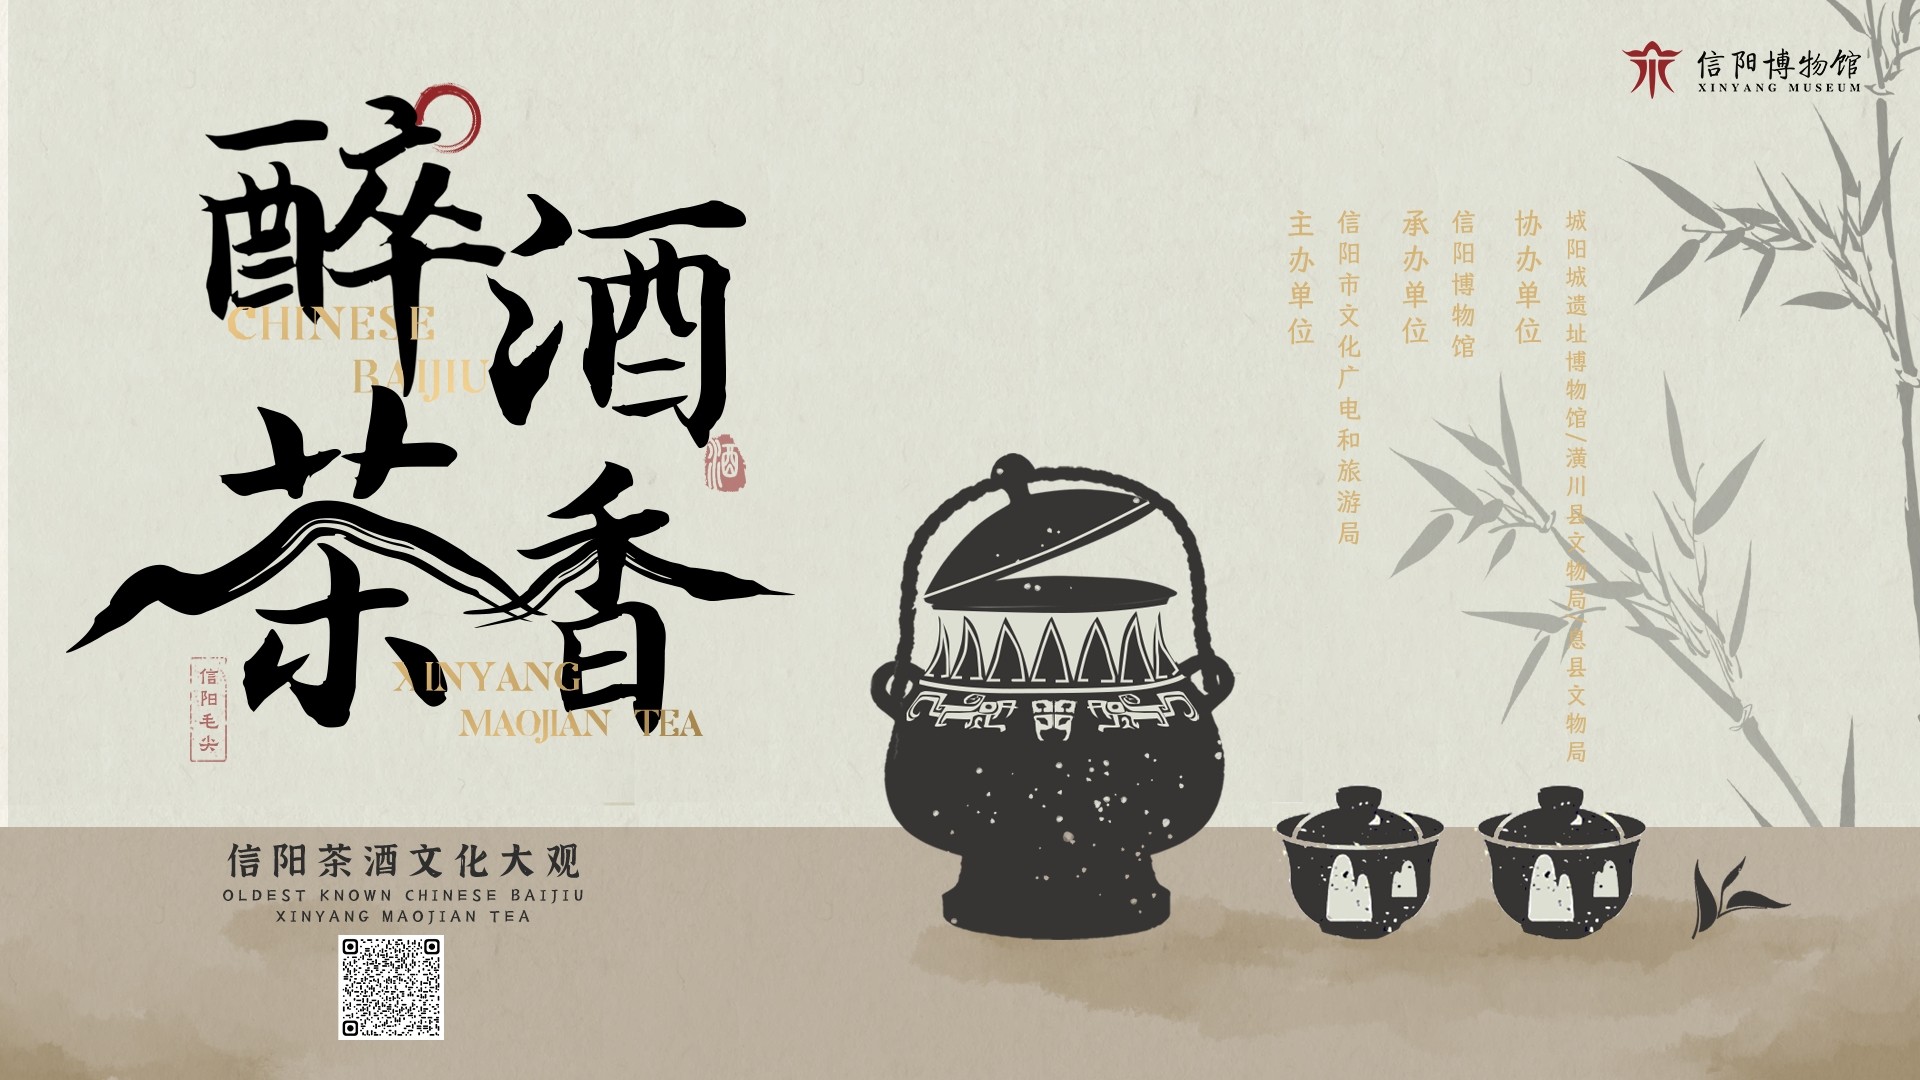 信阳博物馆《醉酒茶香——信阳茶酒文化大观展》云展览上线了